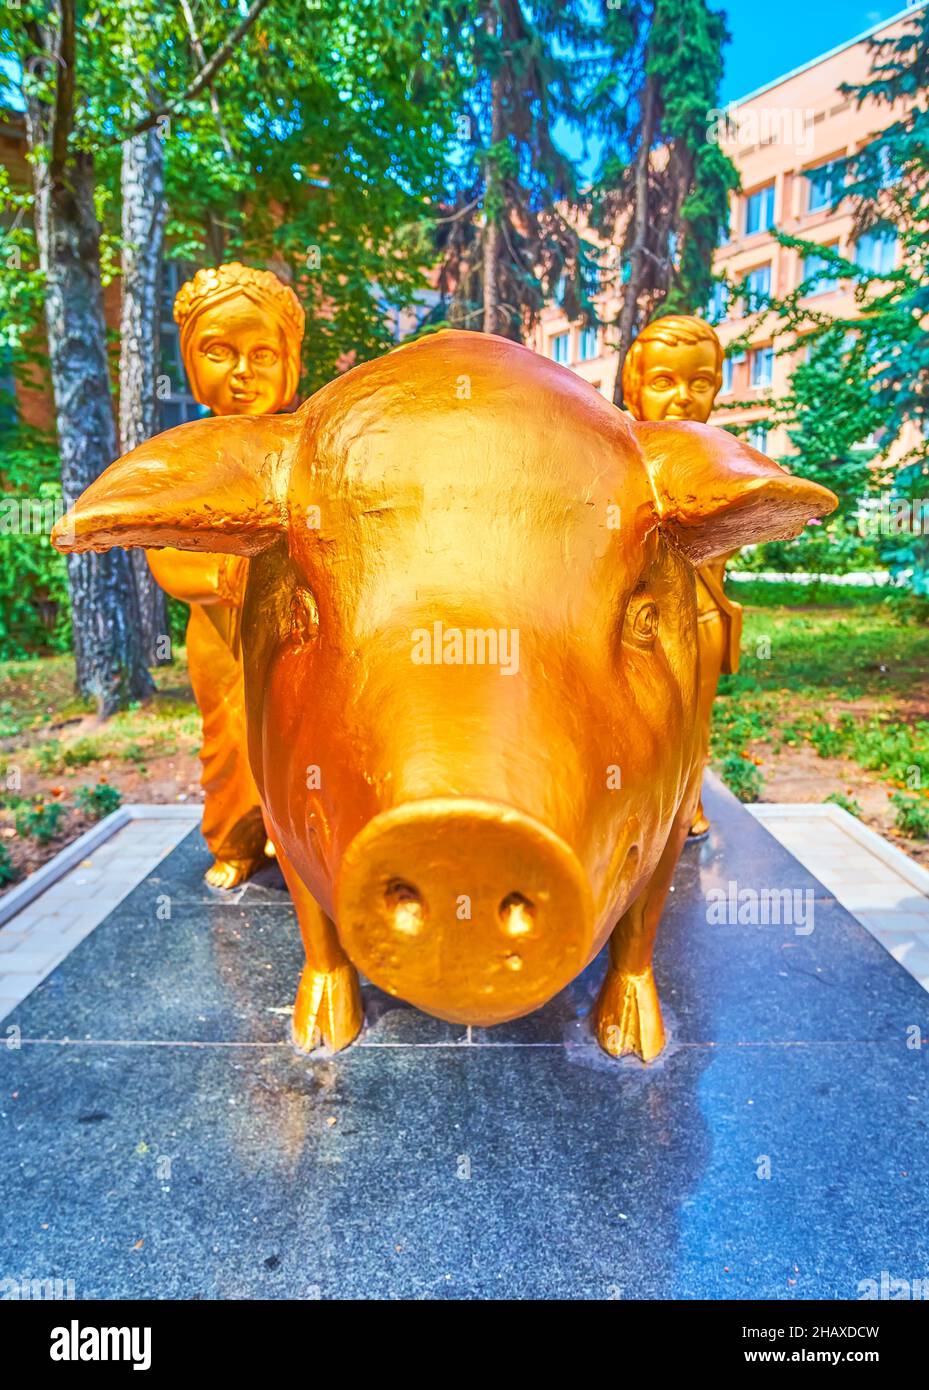 POLTAVA, UKRAINE - 22 AOÛT 2021 : l'une des sculptures les plus passionnantes de la ville est le cochon d'or avec deux bergers d'enfants, situé dans le courtyar Banque D'Images